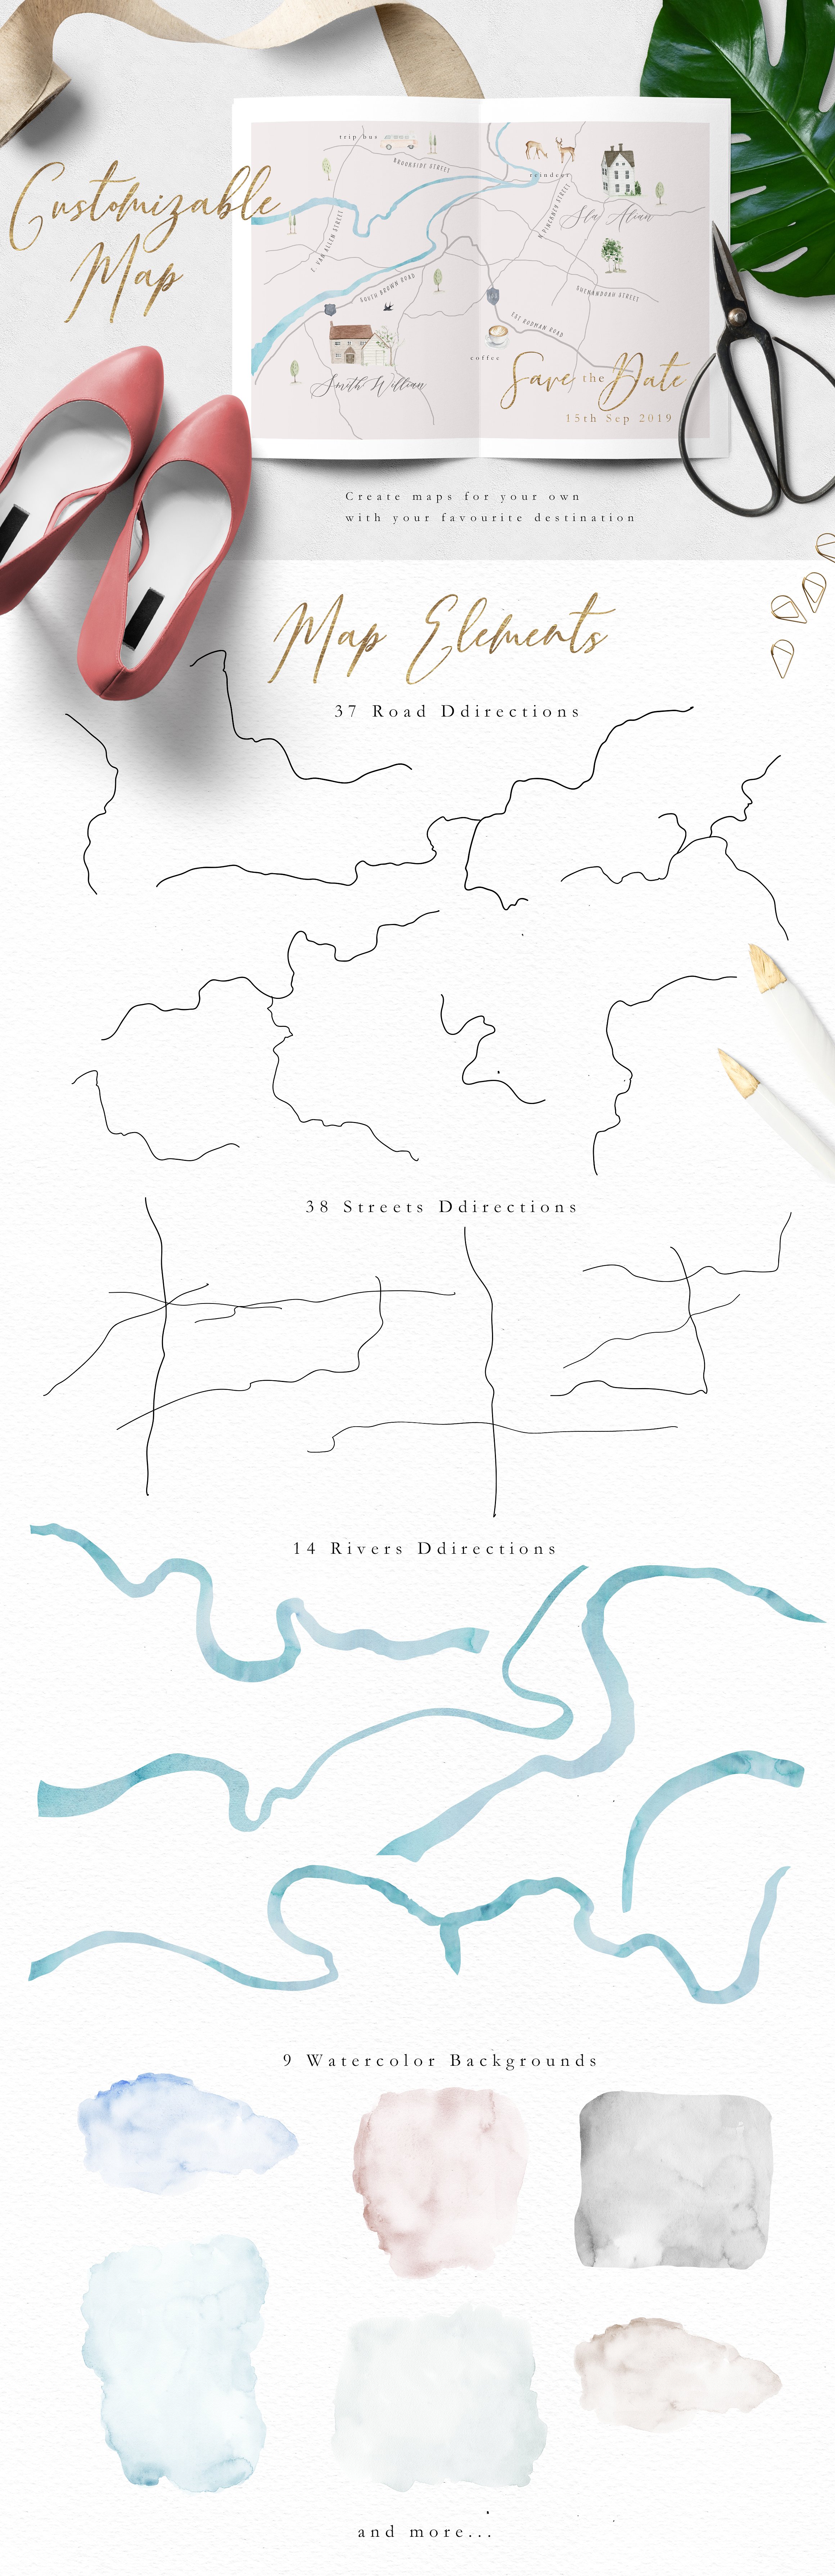 水彩手绘简易地图插画素材 Map Creator插图(1)